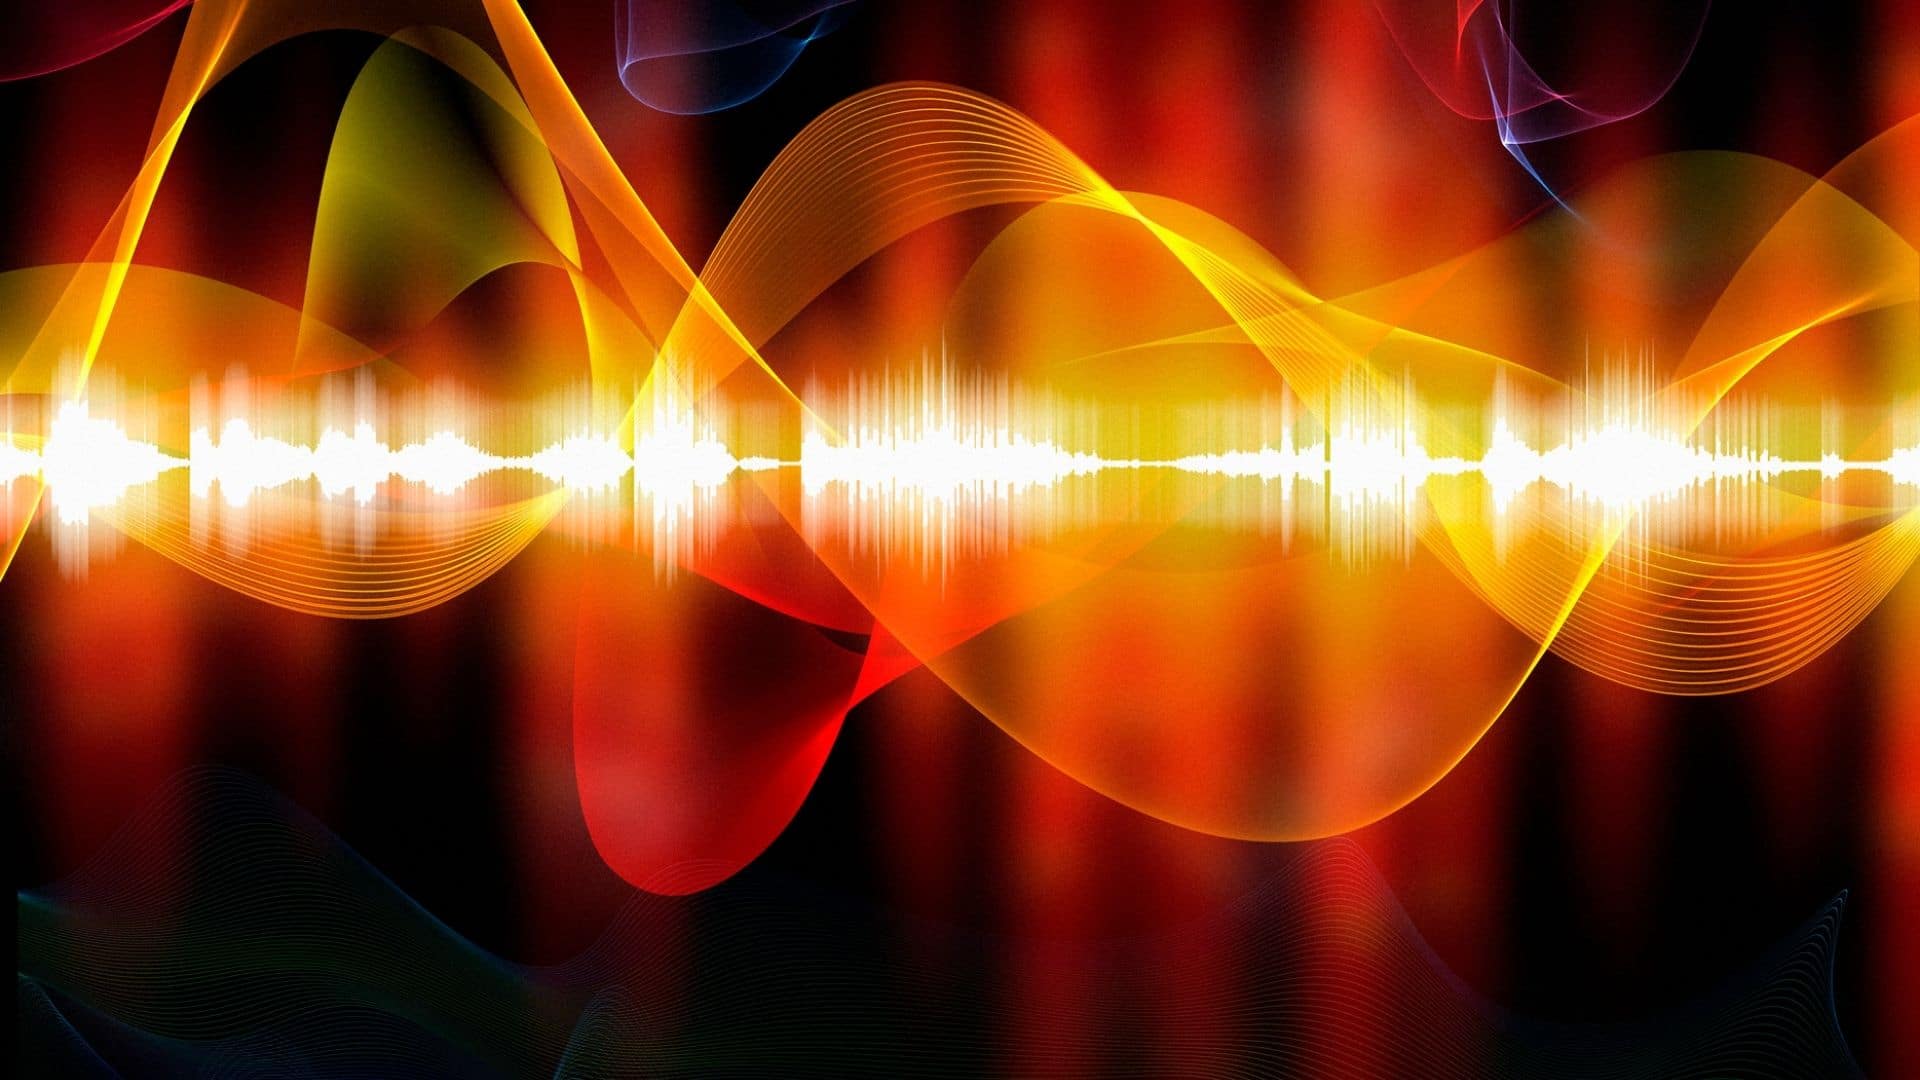 Mekanisme baru telah ditemukan yang mengontrol aliran suara